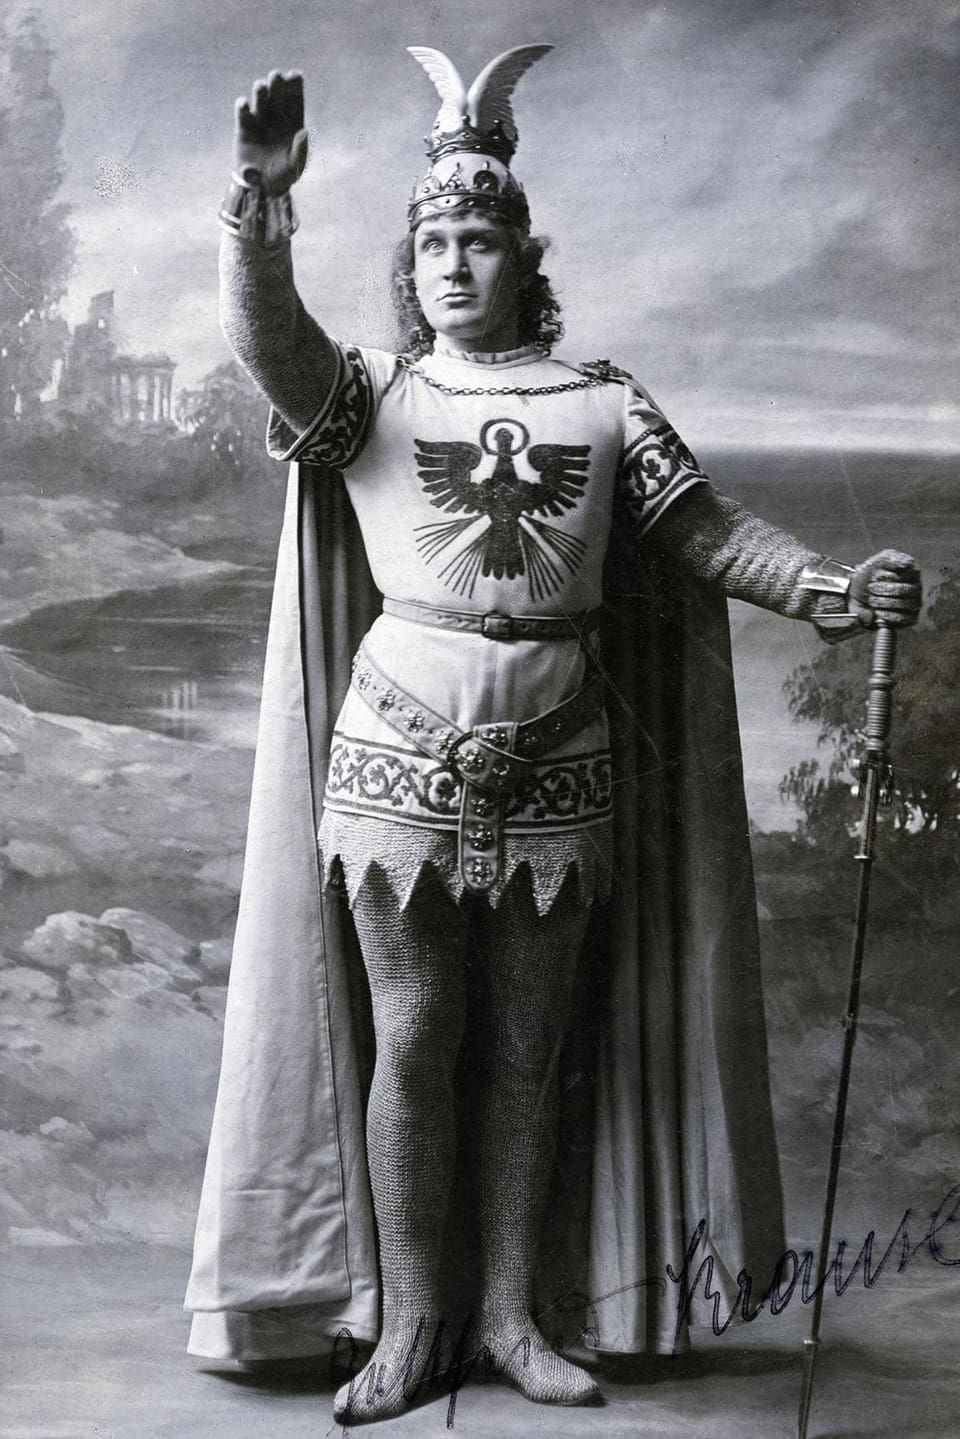 Mann mit Adler auf dem Kostüm und erhobenem Arm. 